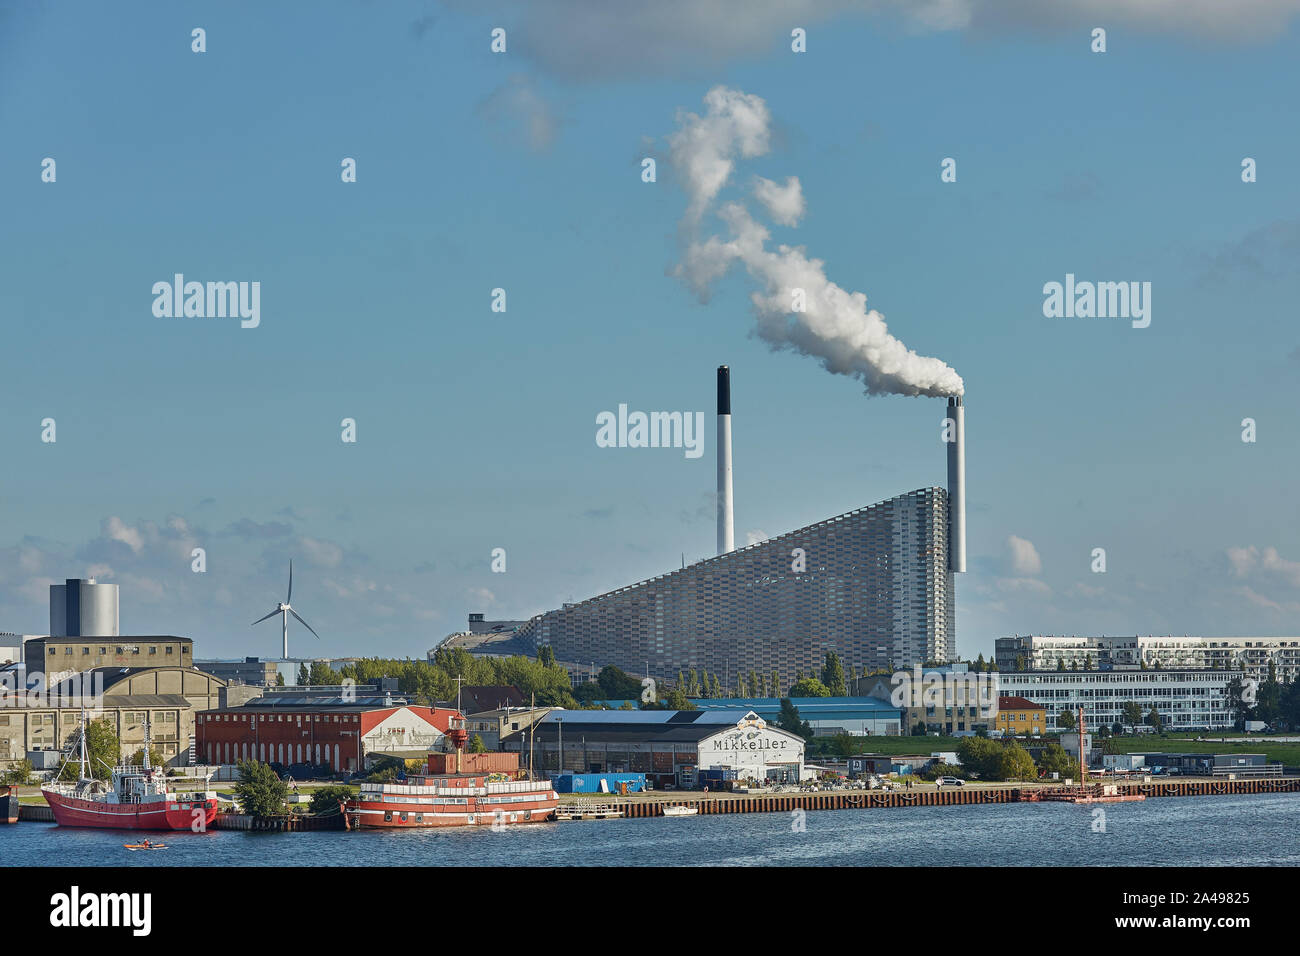 Kopenhagen, Dänemark - 25. MAI 2017: Amager Bakke/Copenhill Waste-to-Energy Power Plant in Kopenhagen. Auf der Dachterrasse Skigebiet geöffnet Freitag, 4. Oktober 20. Stockfoto